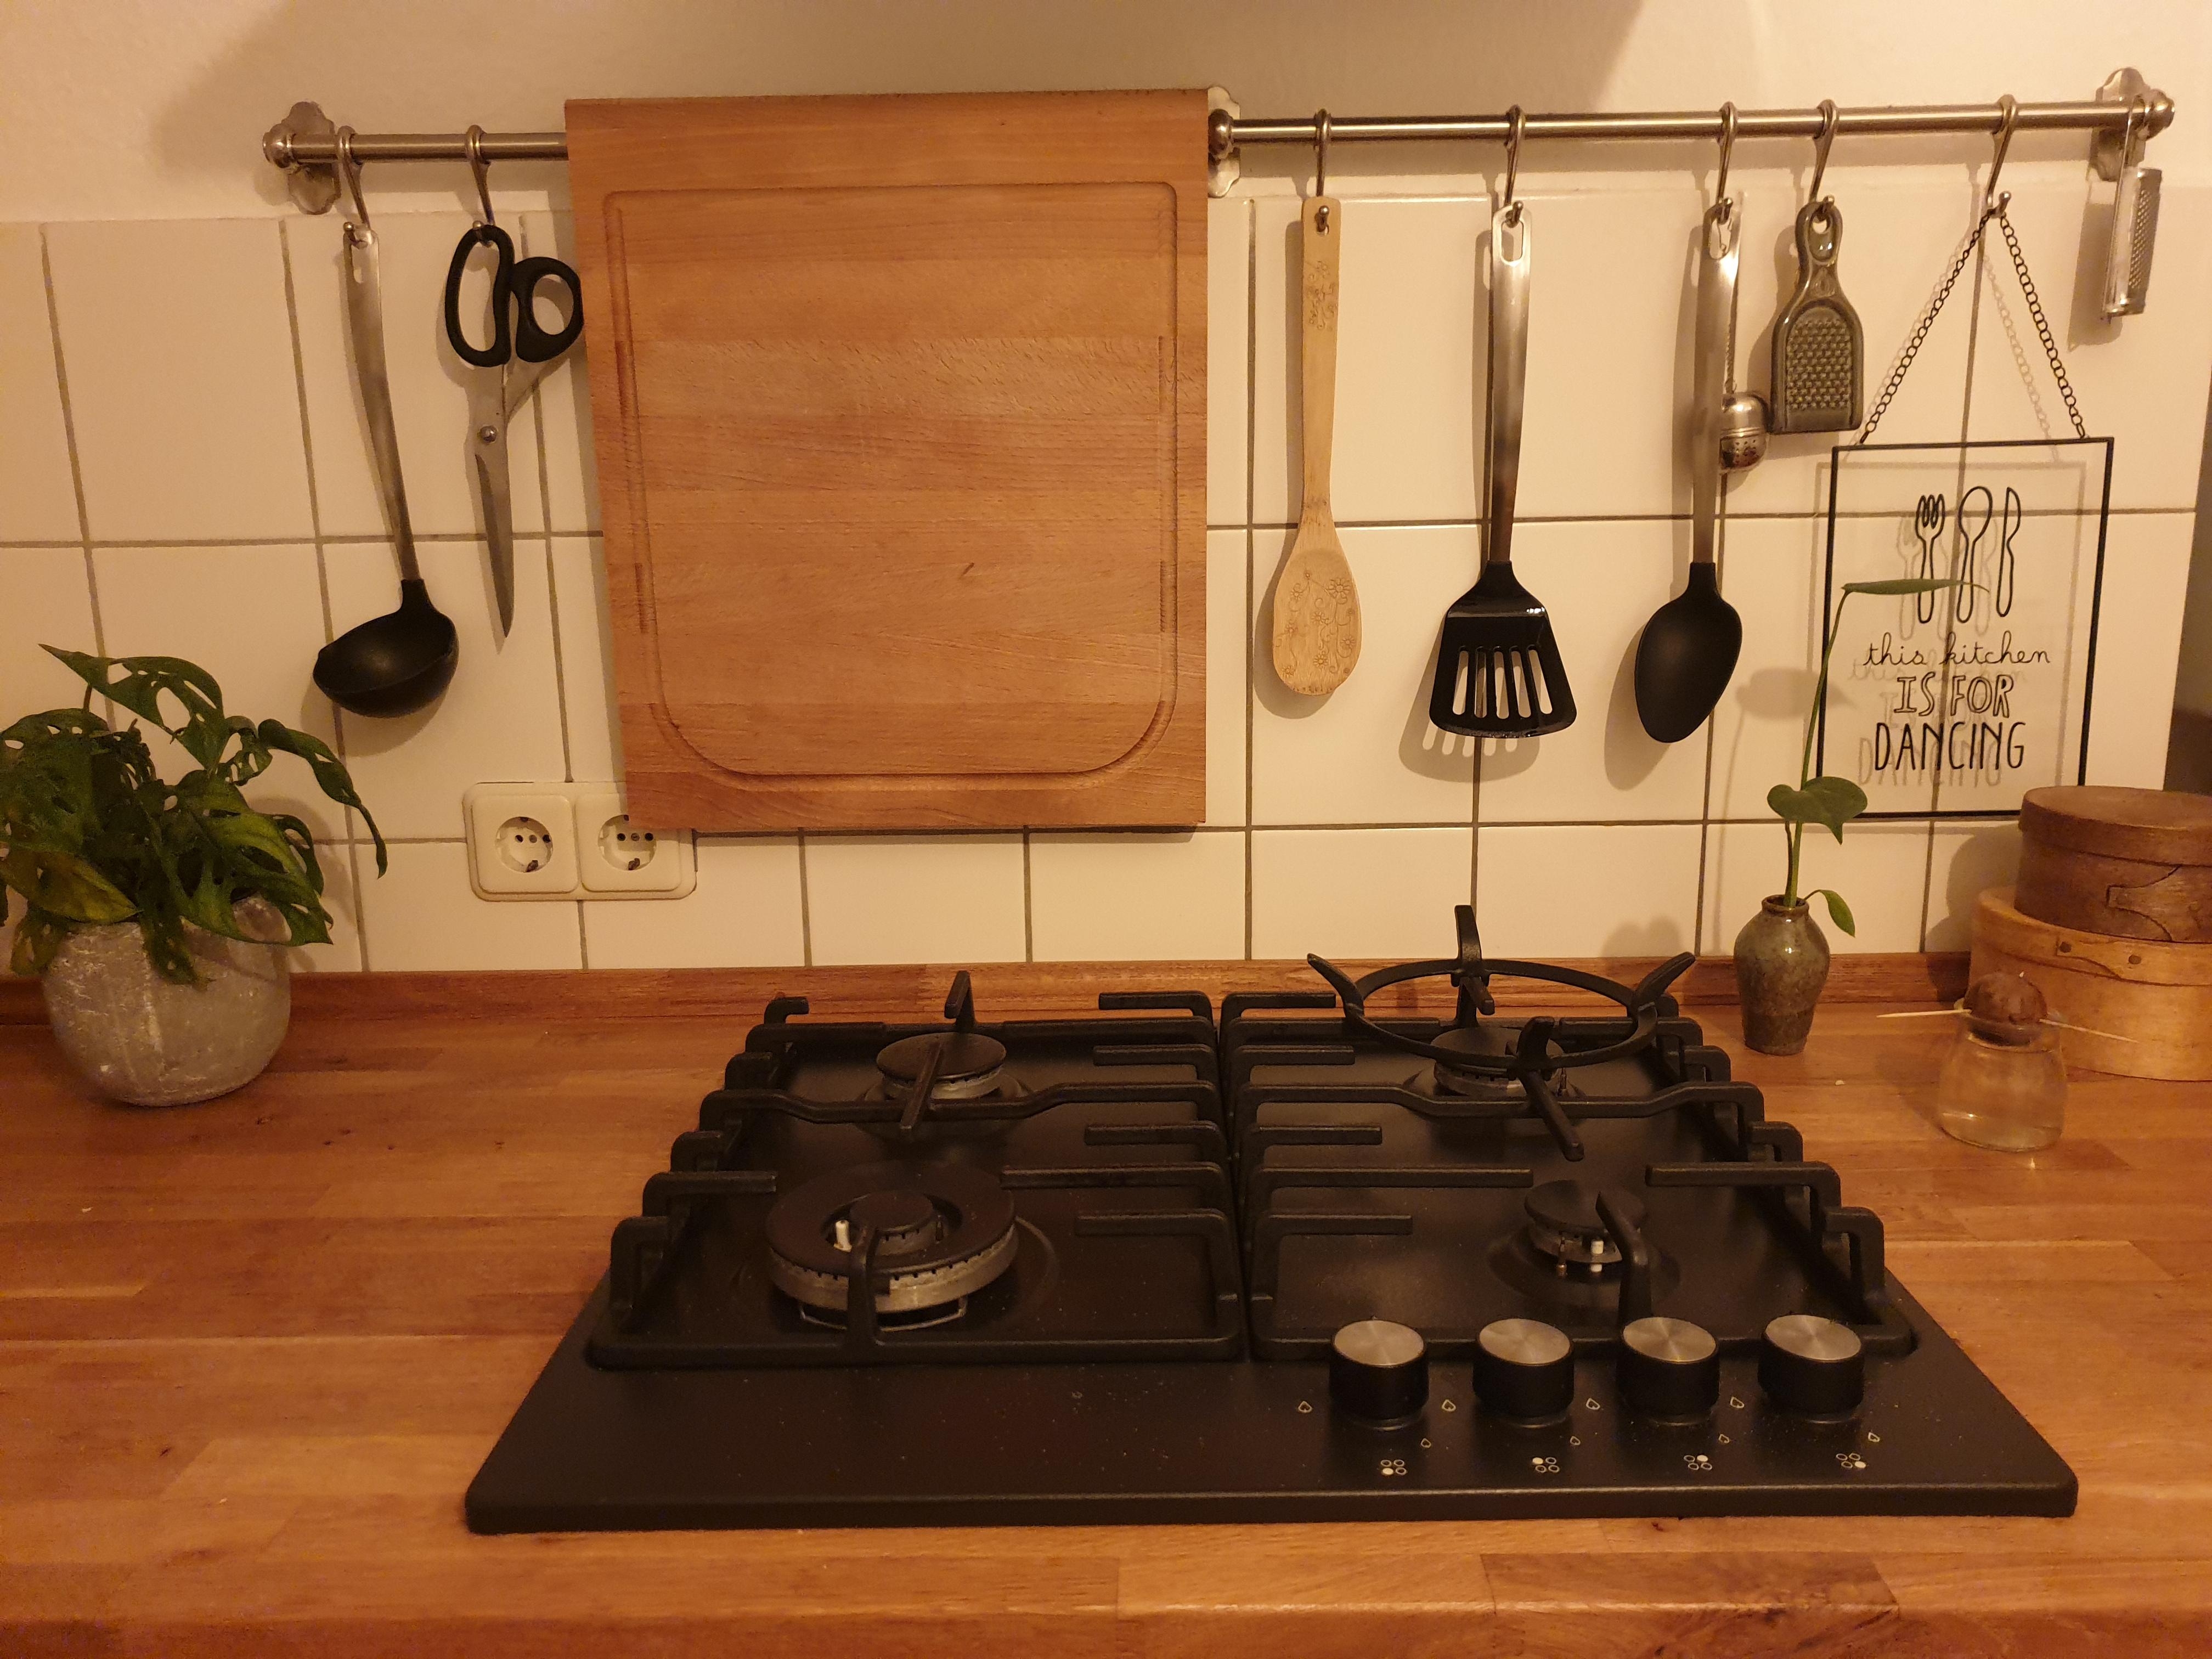 This kitchen is for dancing 💃
#küchendeko
#livingchallenge 